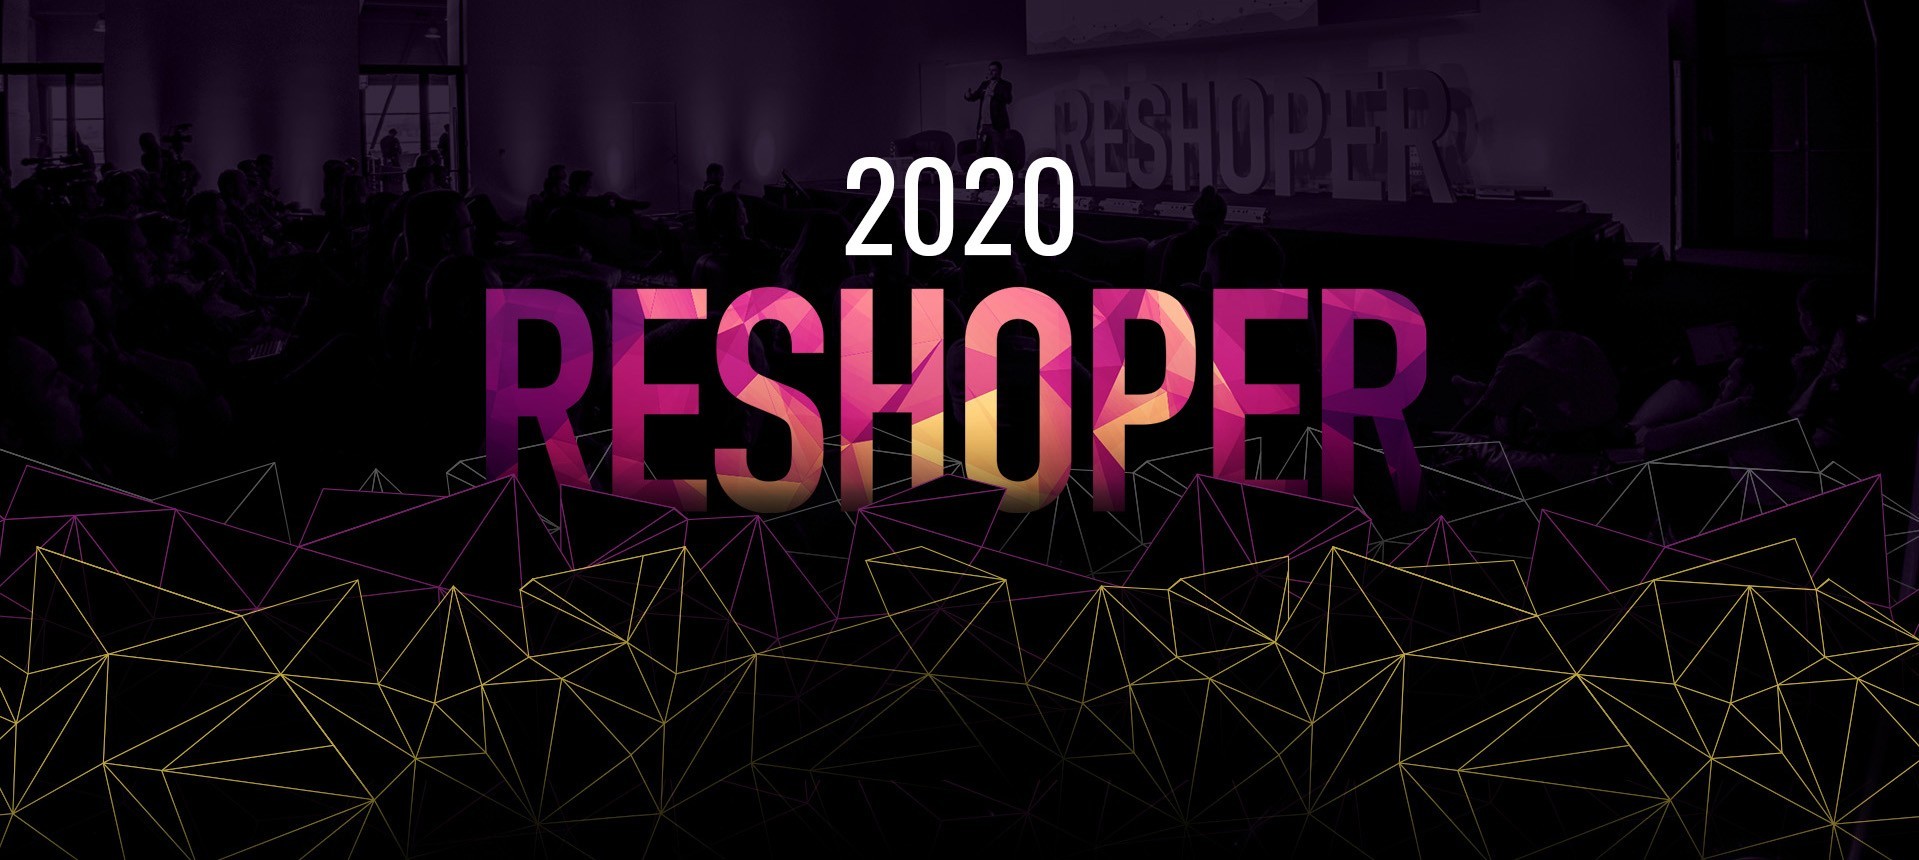 Reshoper 2020